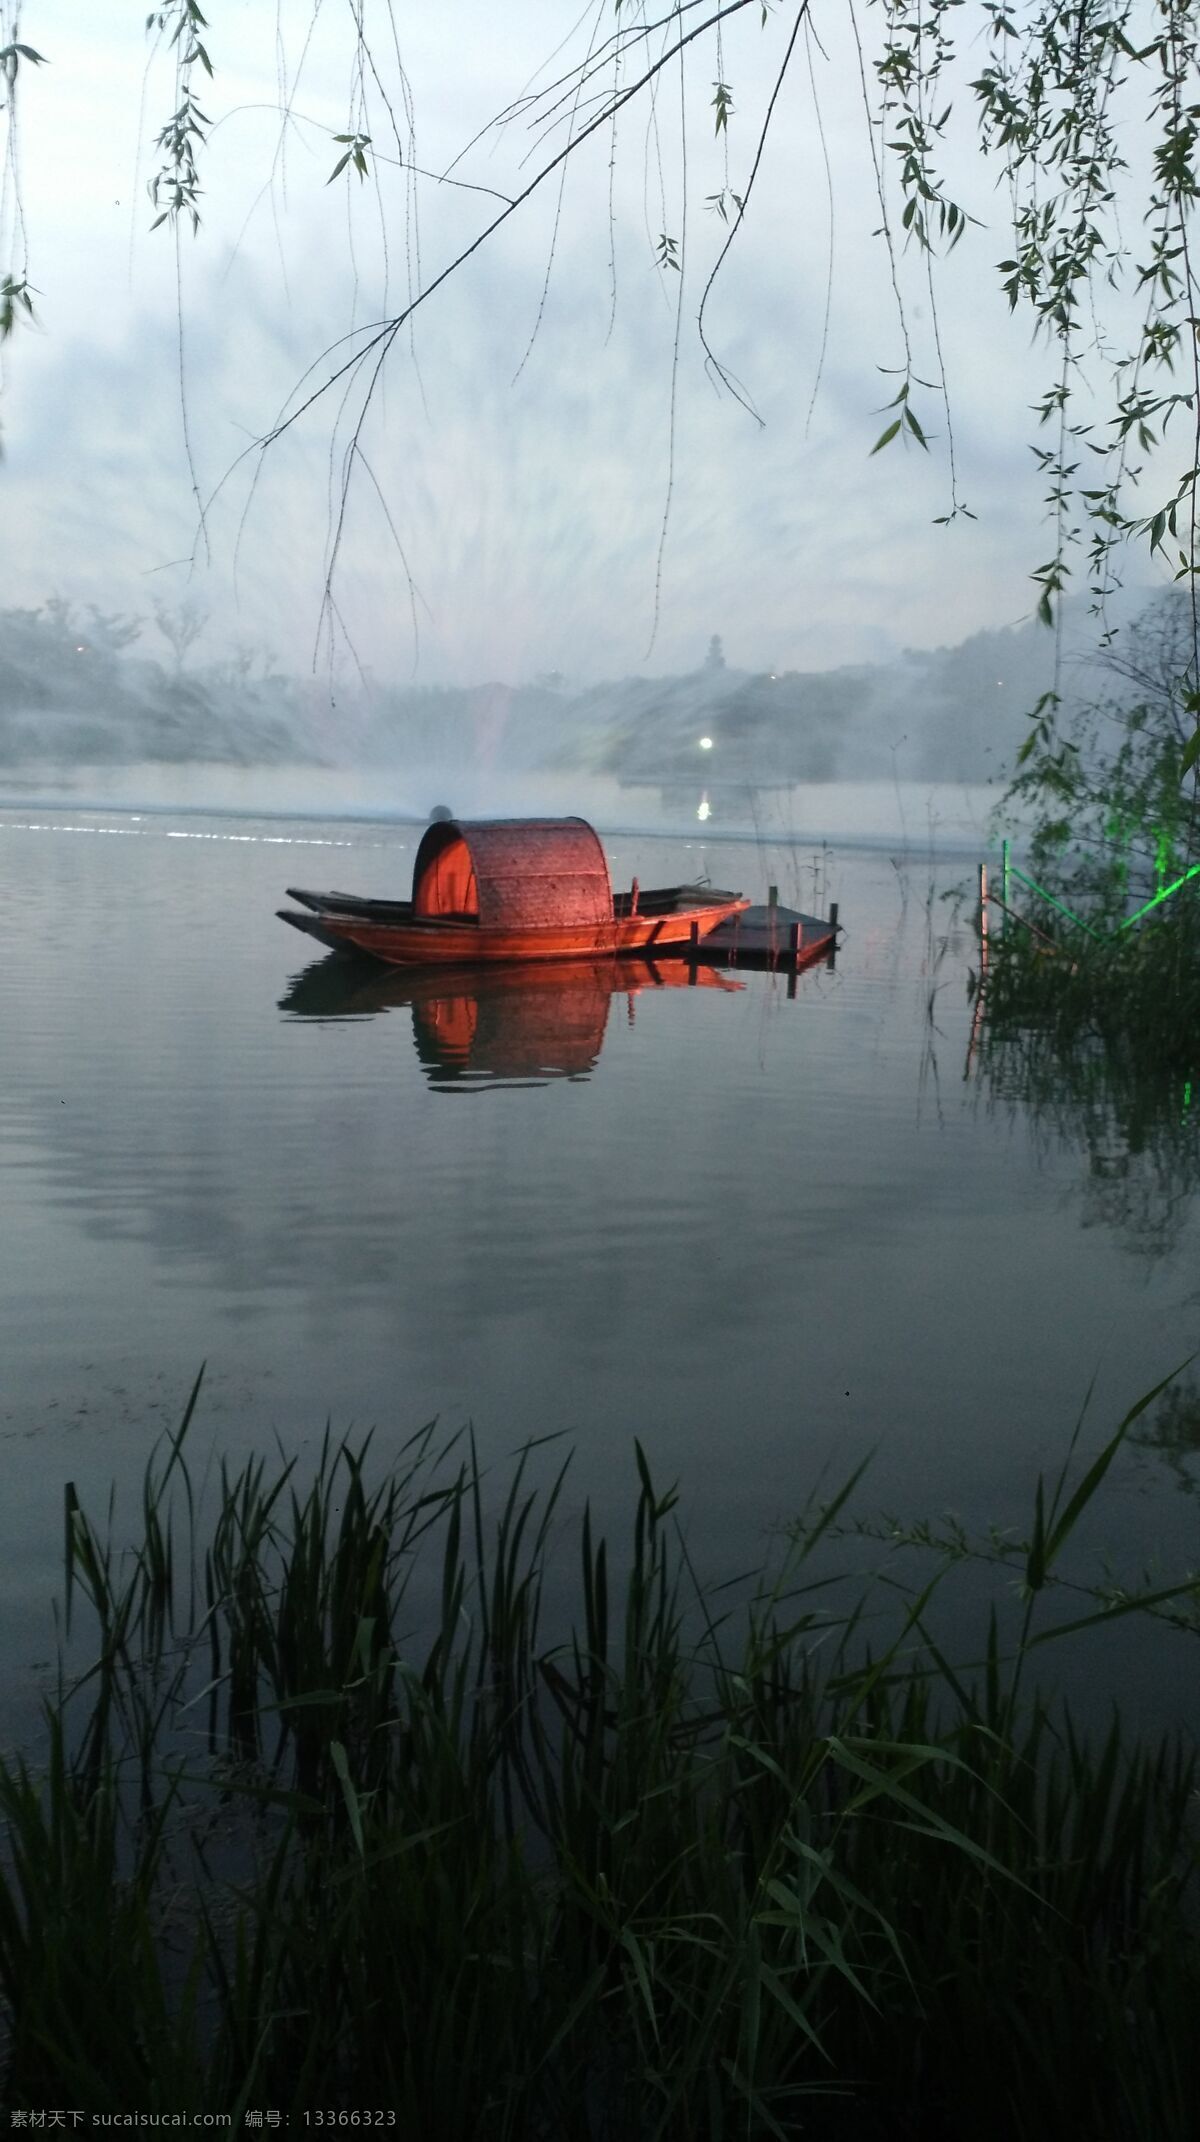 水幕 无锡拈花湾 园林风景 乌篷船 自然风景 风景名胜 无锡园林风景 自然景观